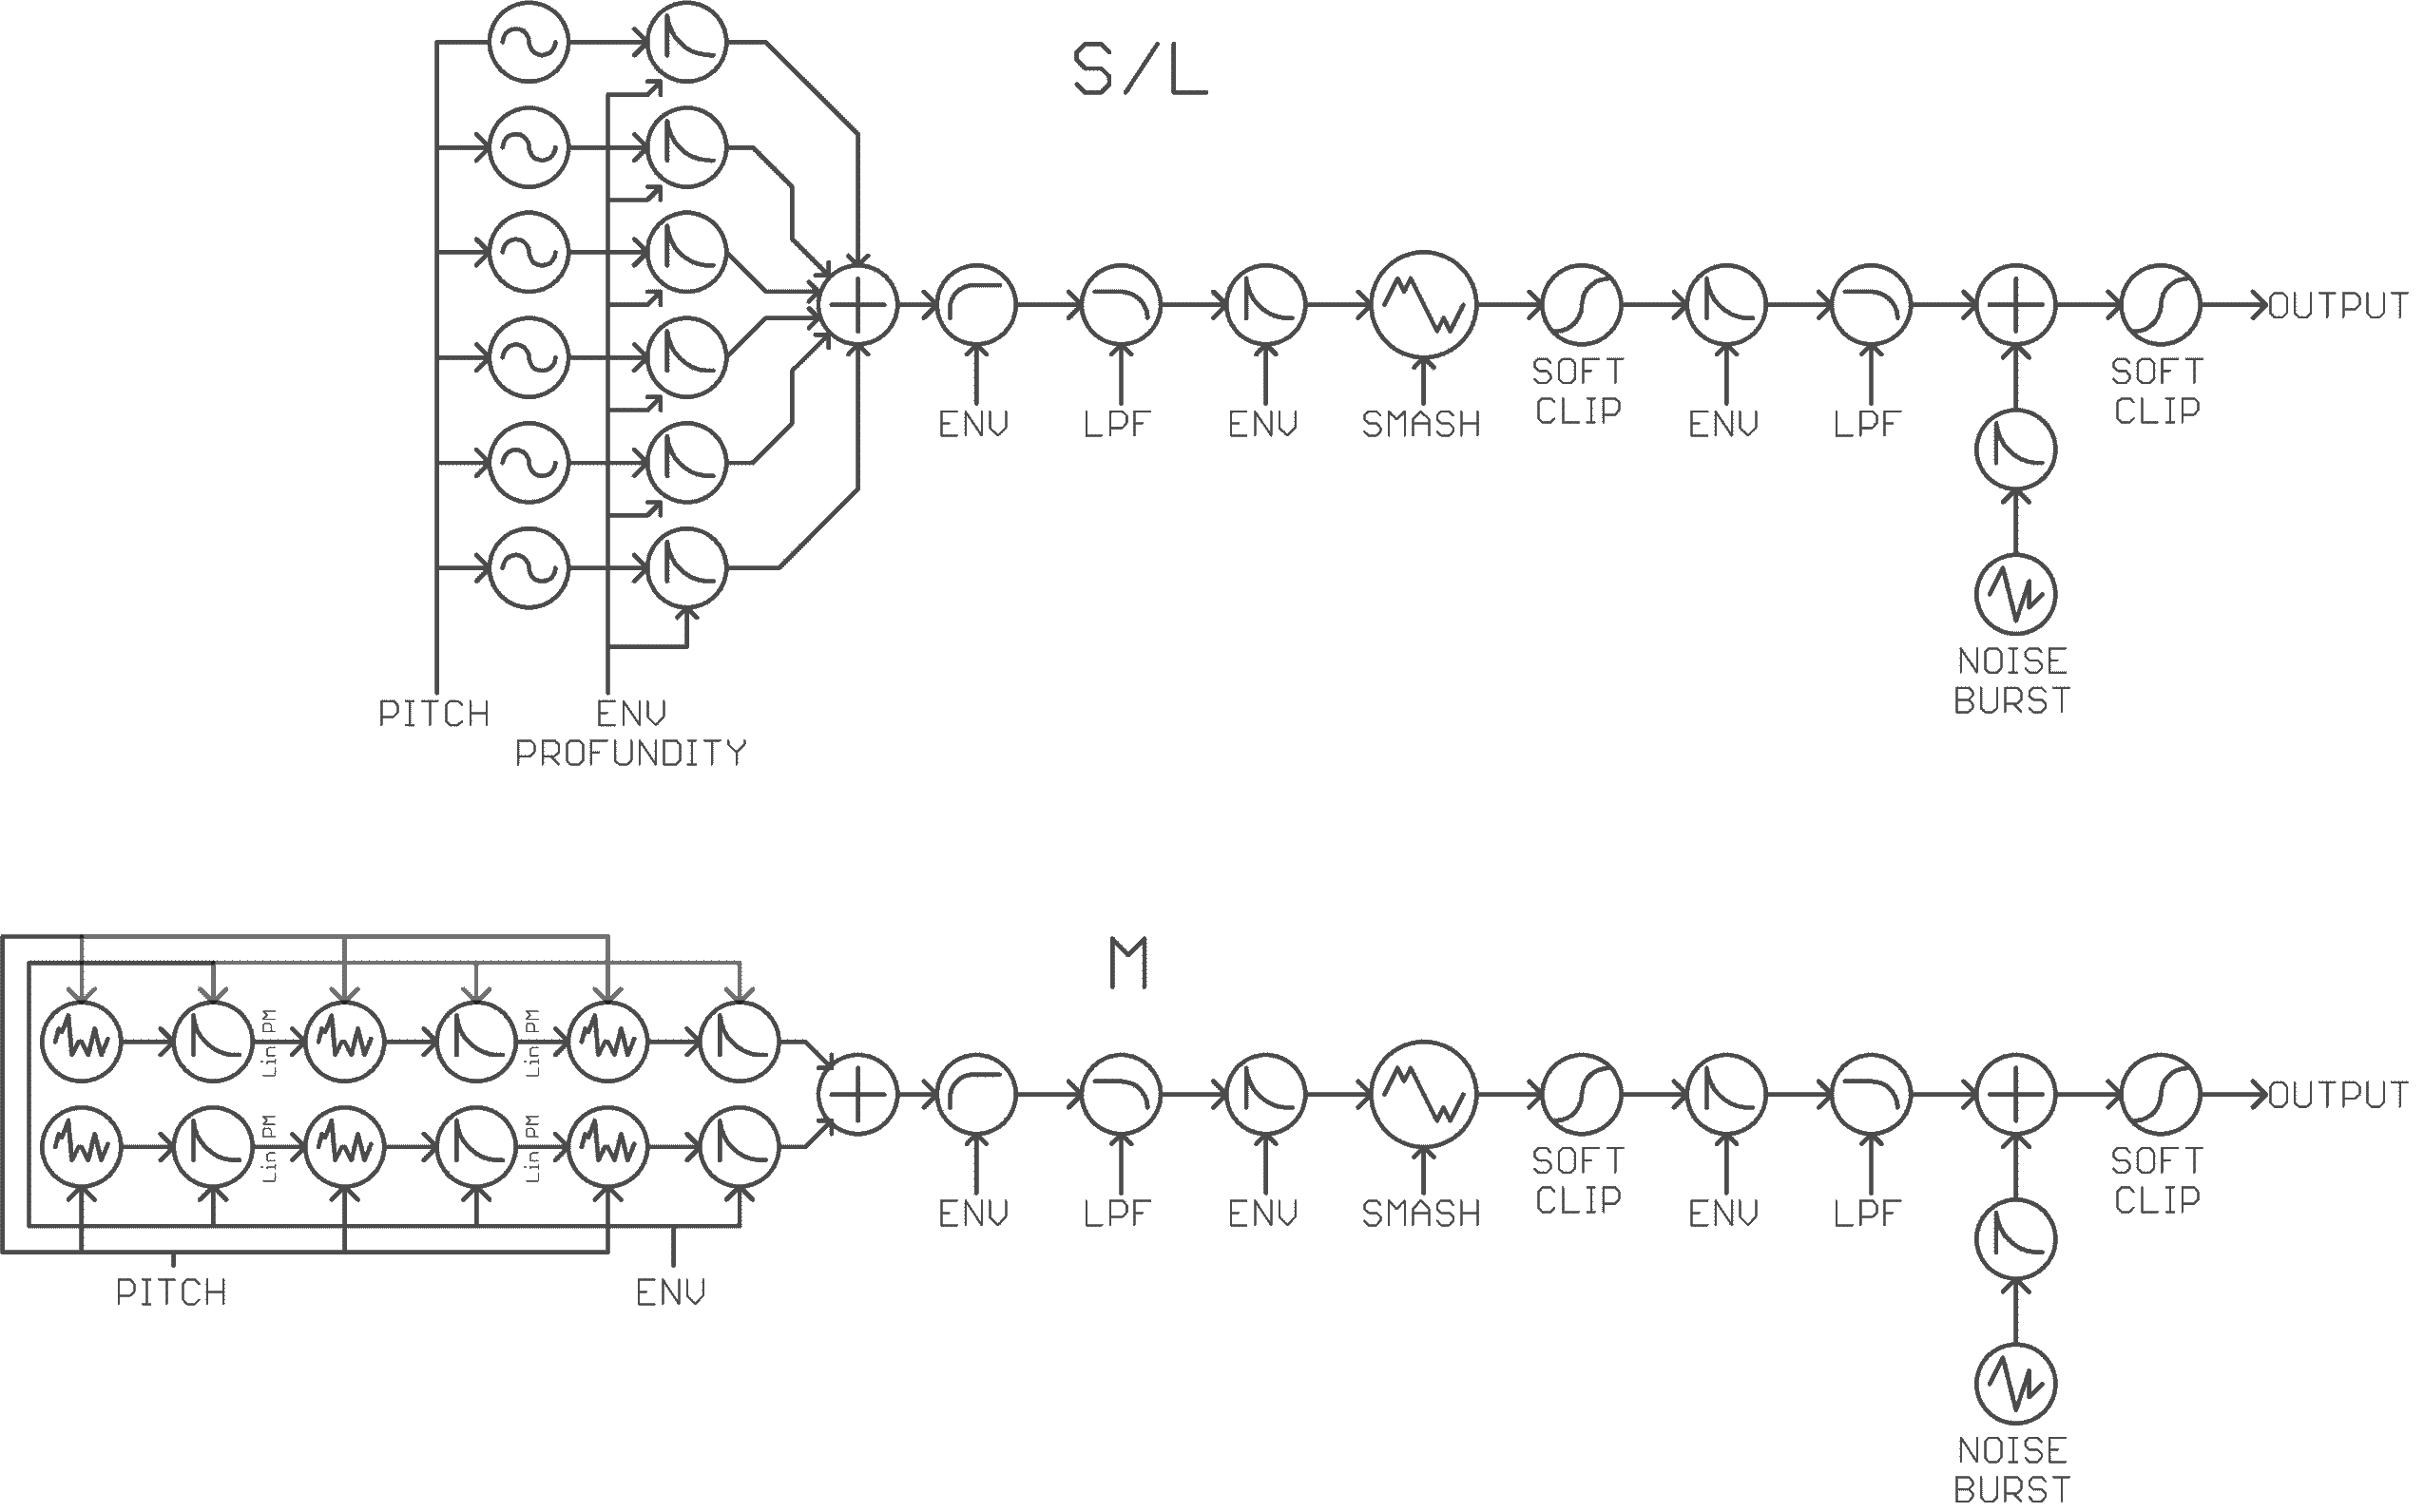 Sequence diagram of Manis Iteritas Magnus' sound generation